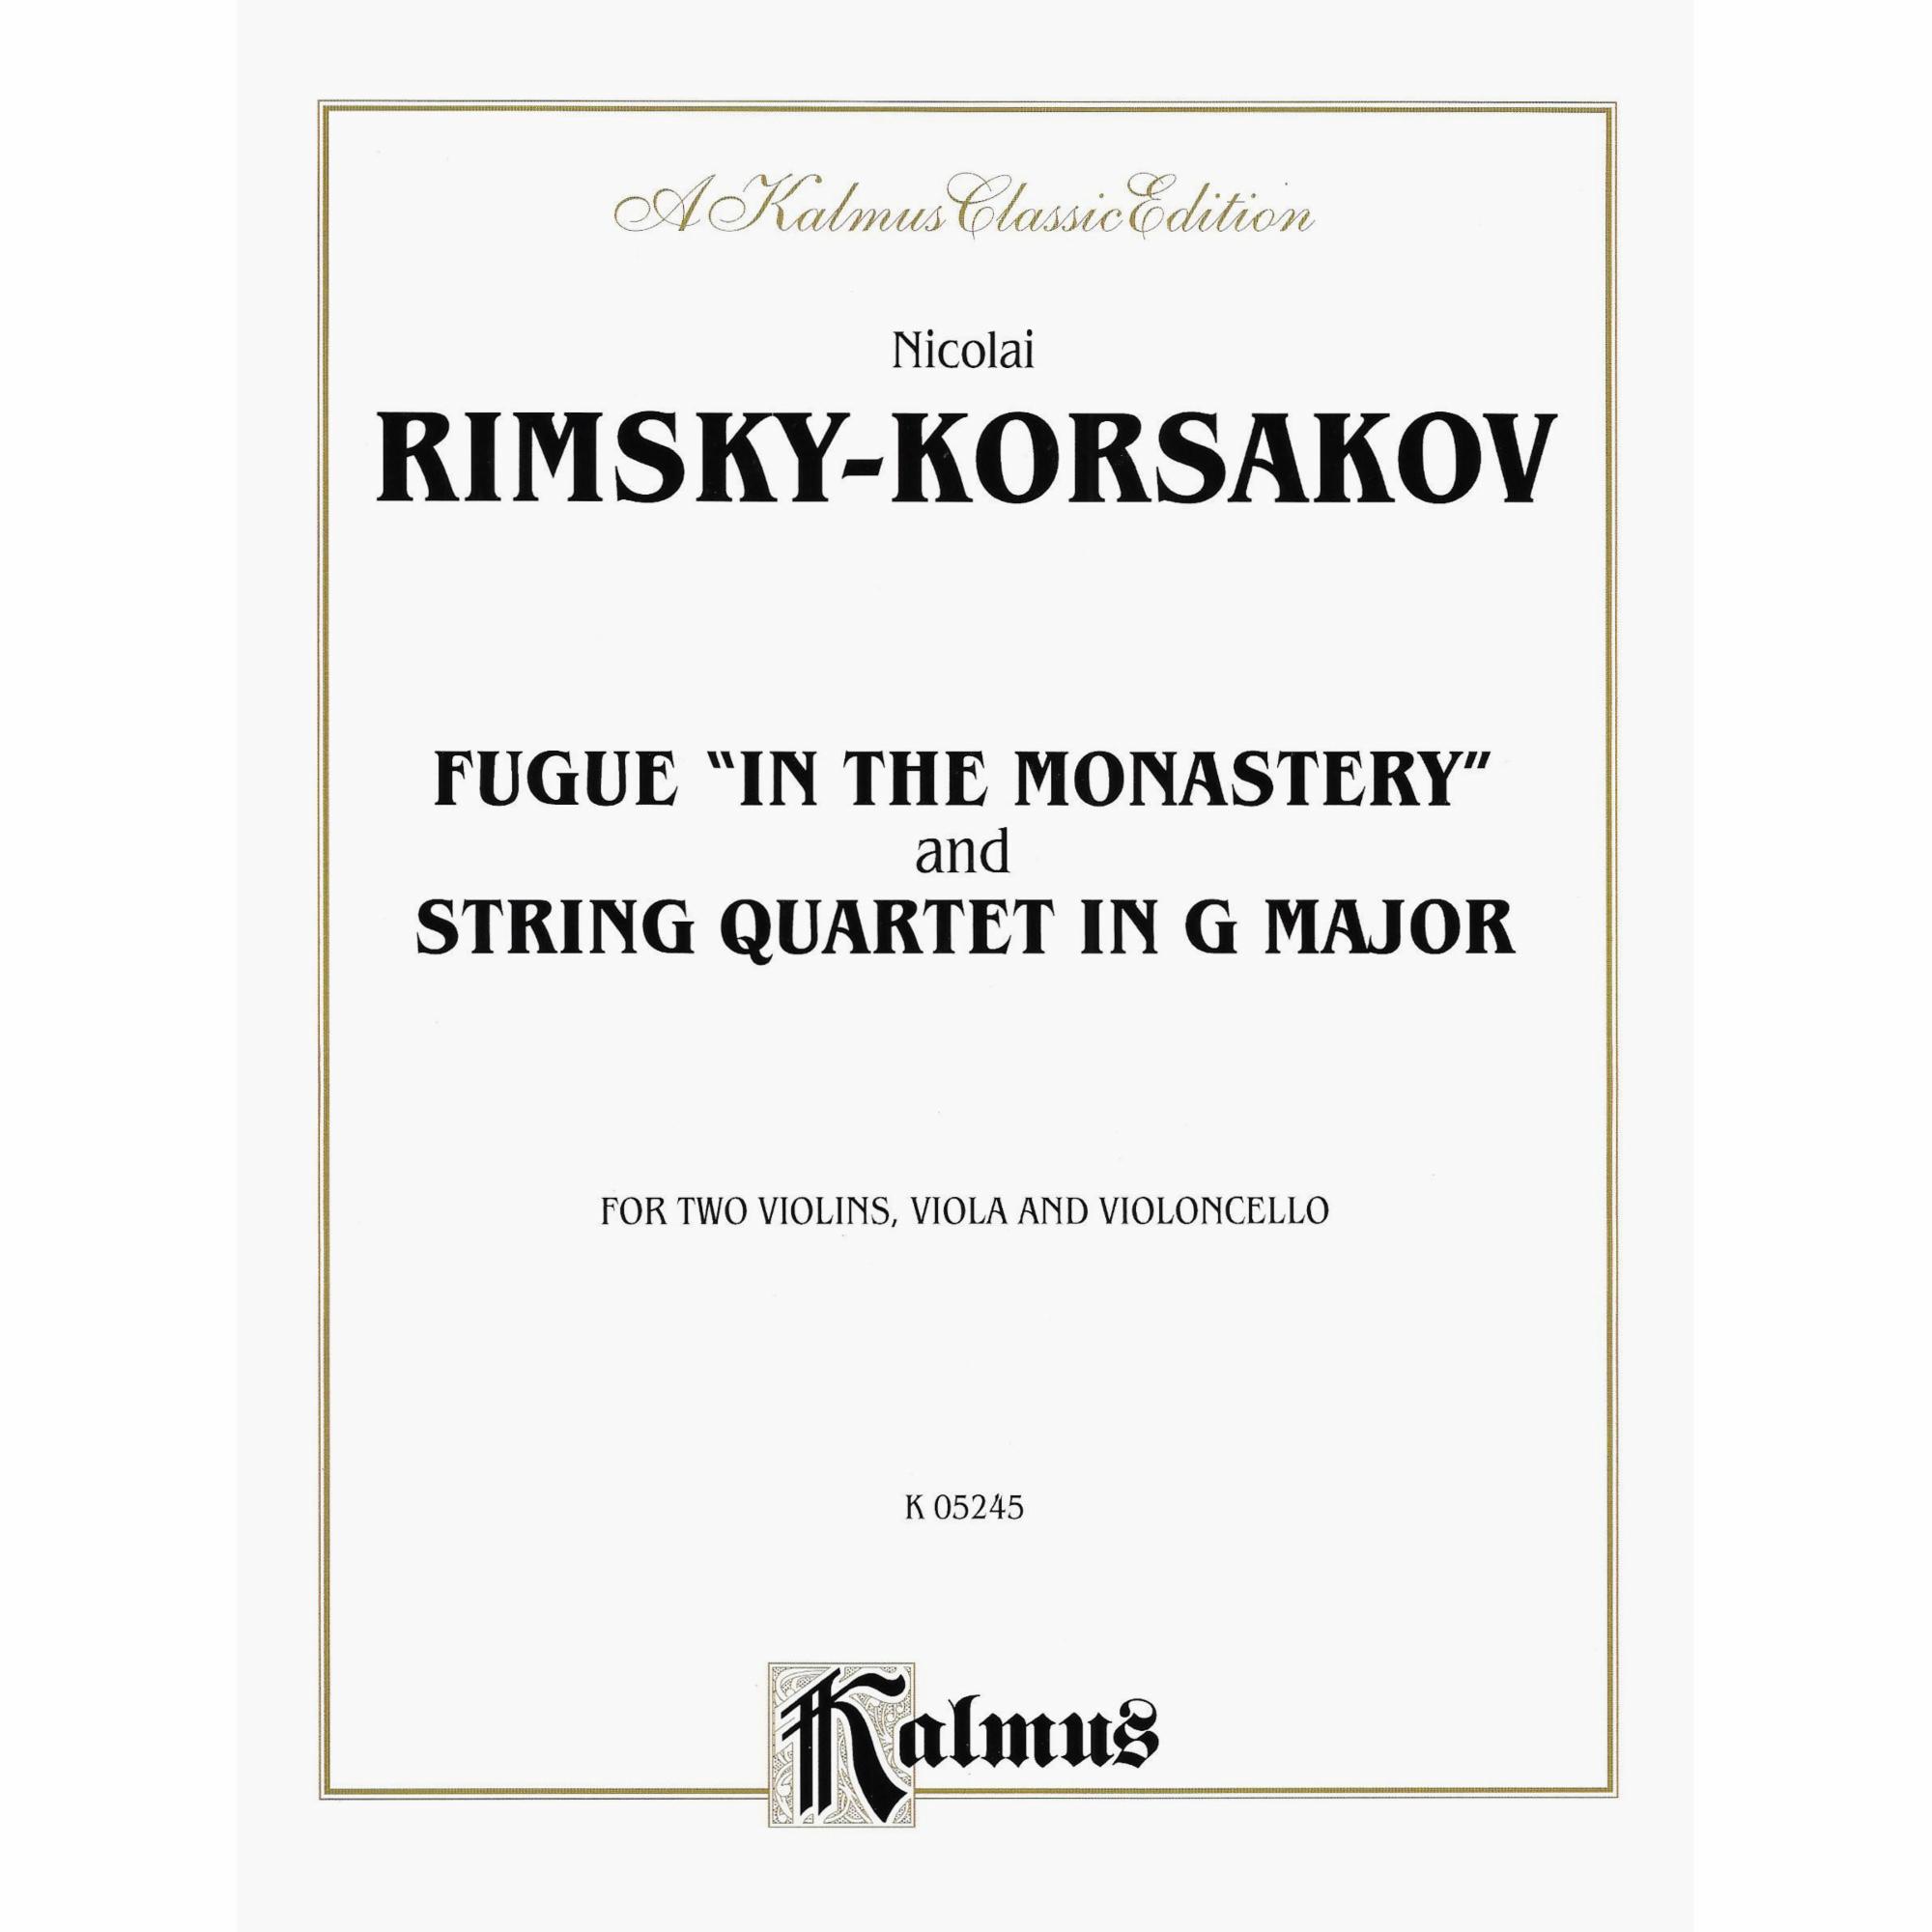 Rimsky-Korsakov -- Fugue (In the Monastery) and String Quartet in G Major